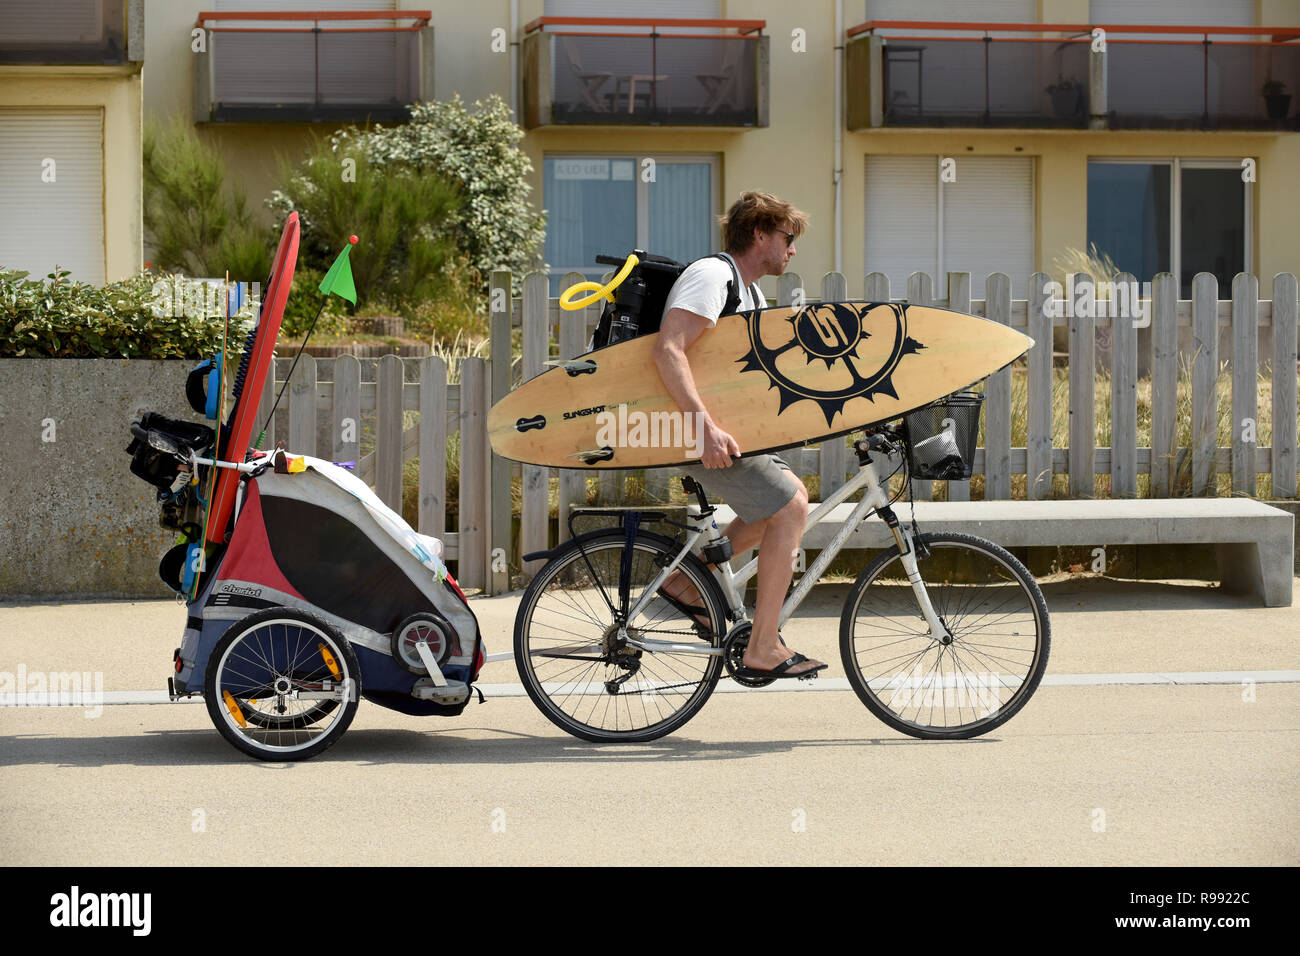 Surfer Reiten Fahrrad mit Surfbrett und Abschleppen Kind im Anhänger an  Wissant im nördlichen Frankreich Stockfotografie - Alamy